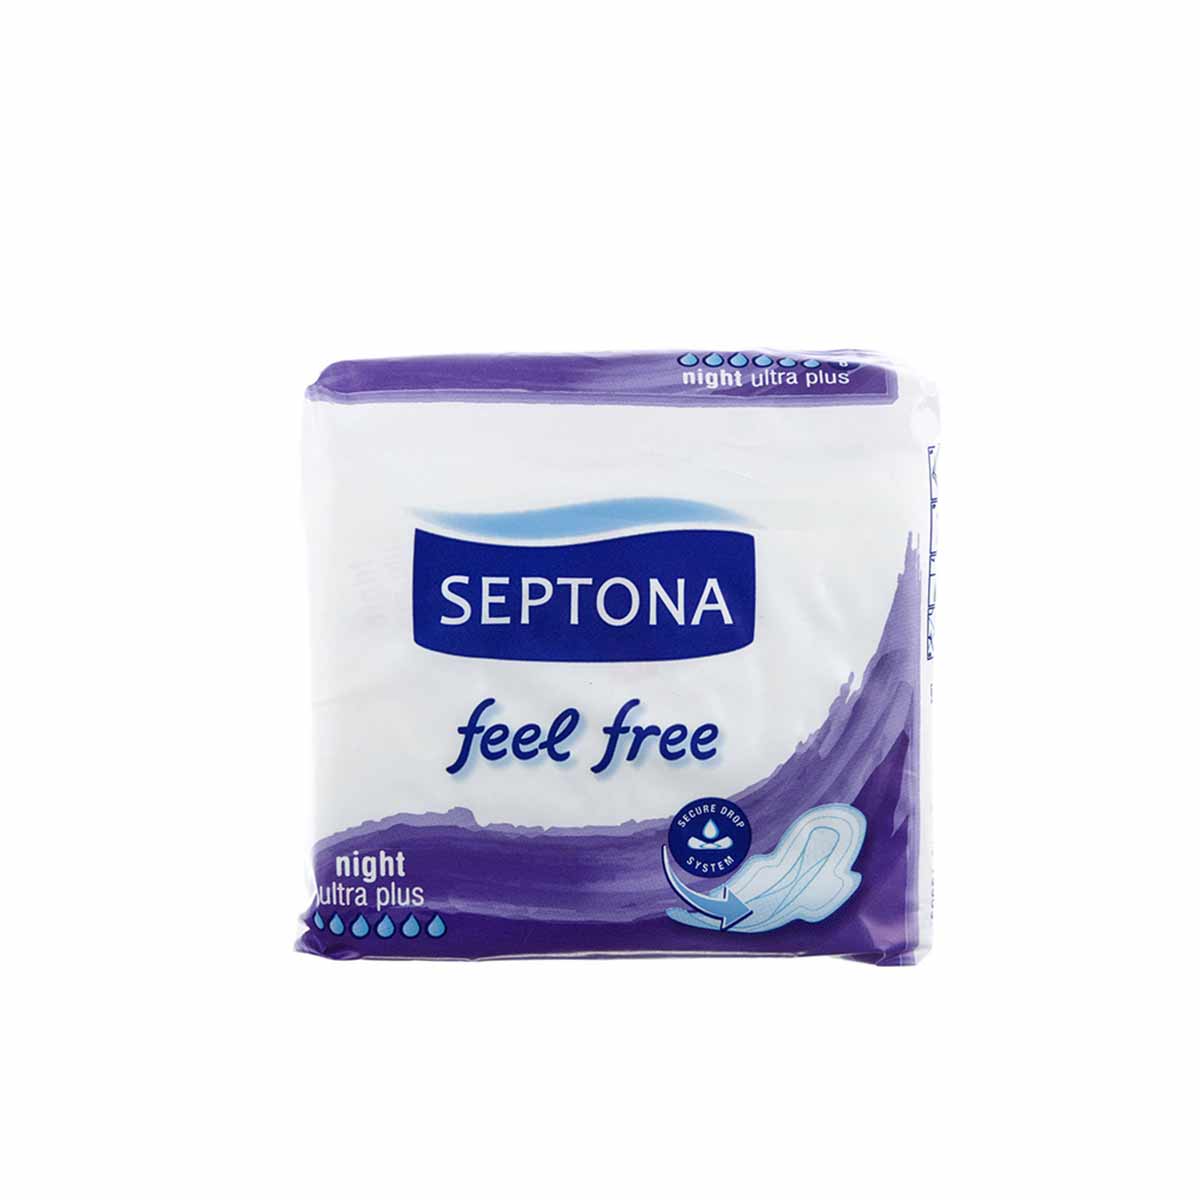 نوار بهداشتی سپتونا مناسب استفاده شب Septona بسته 8 عددی